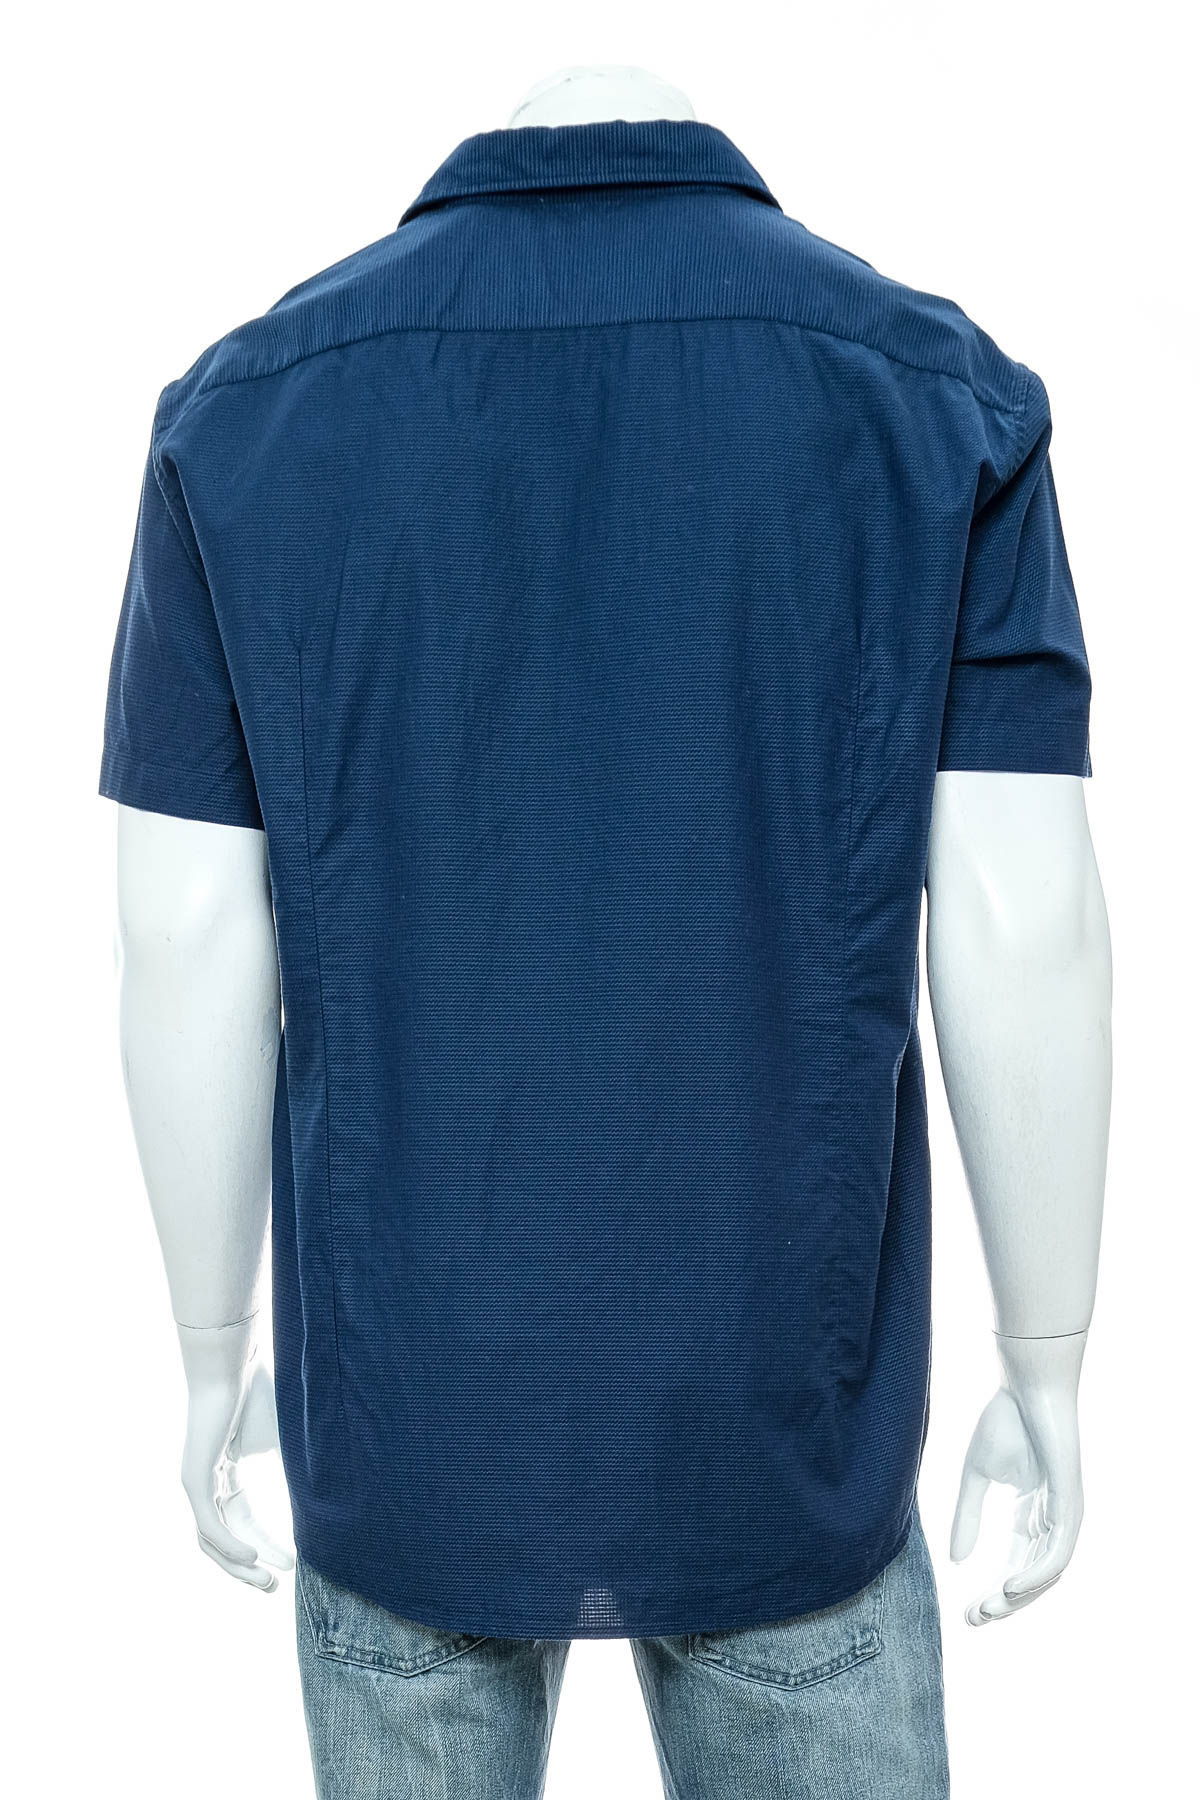 Men's shirt - HUGO BOSS - 1